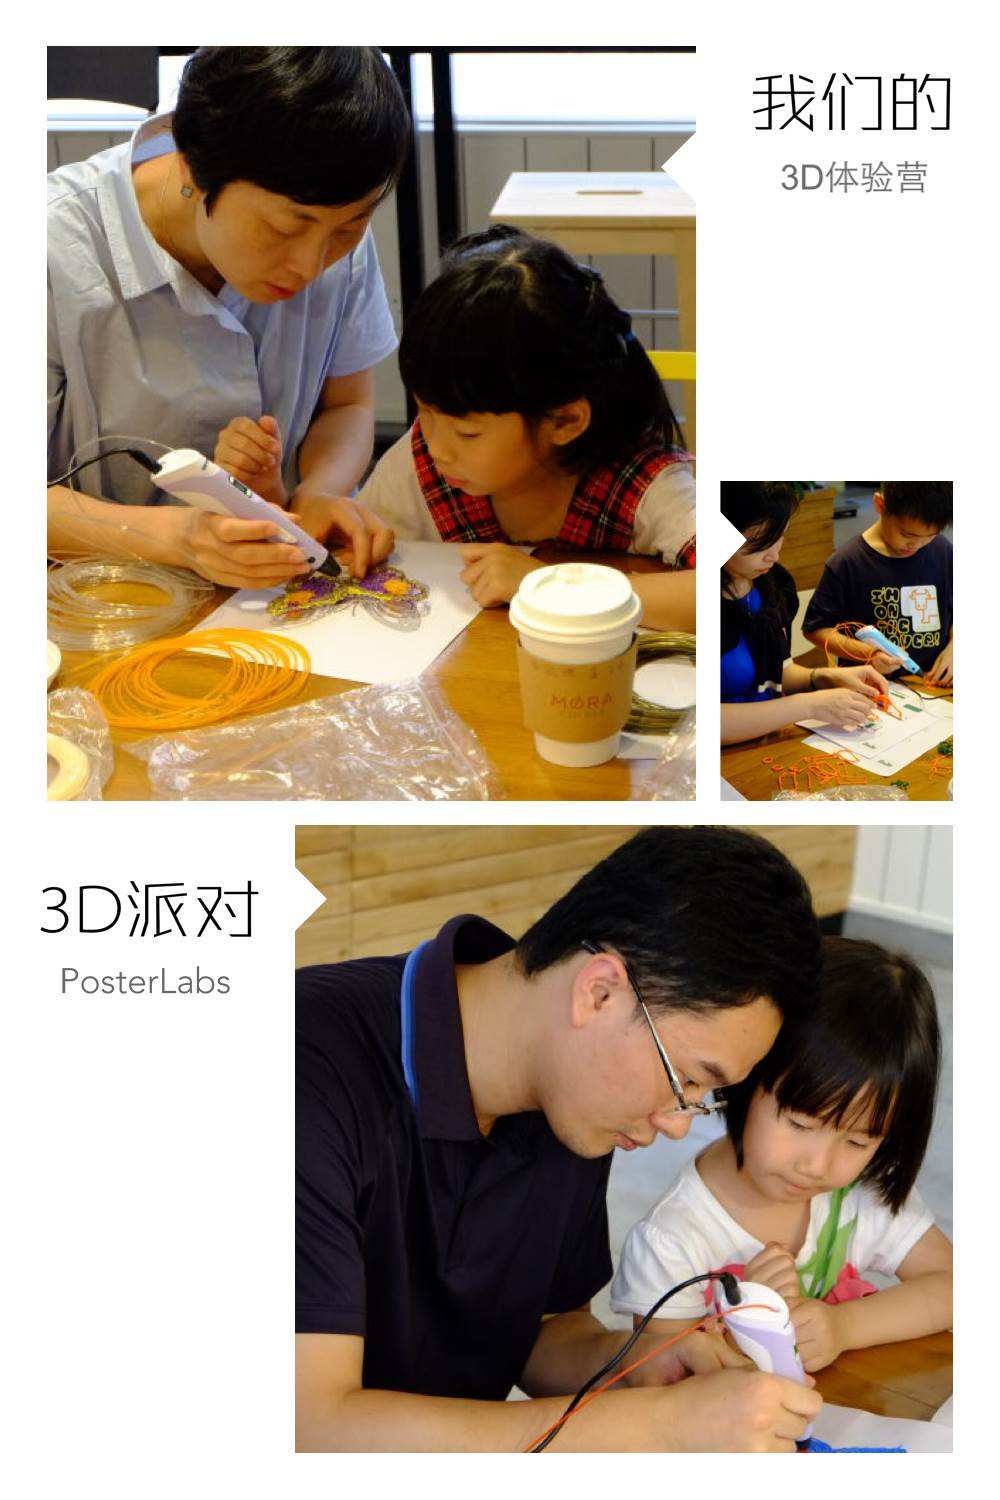 3d打印机课程(3D打印机课程设计答辩问题)